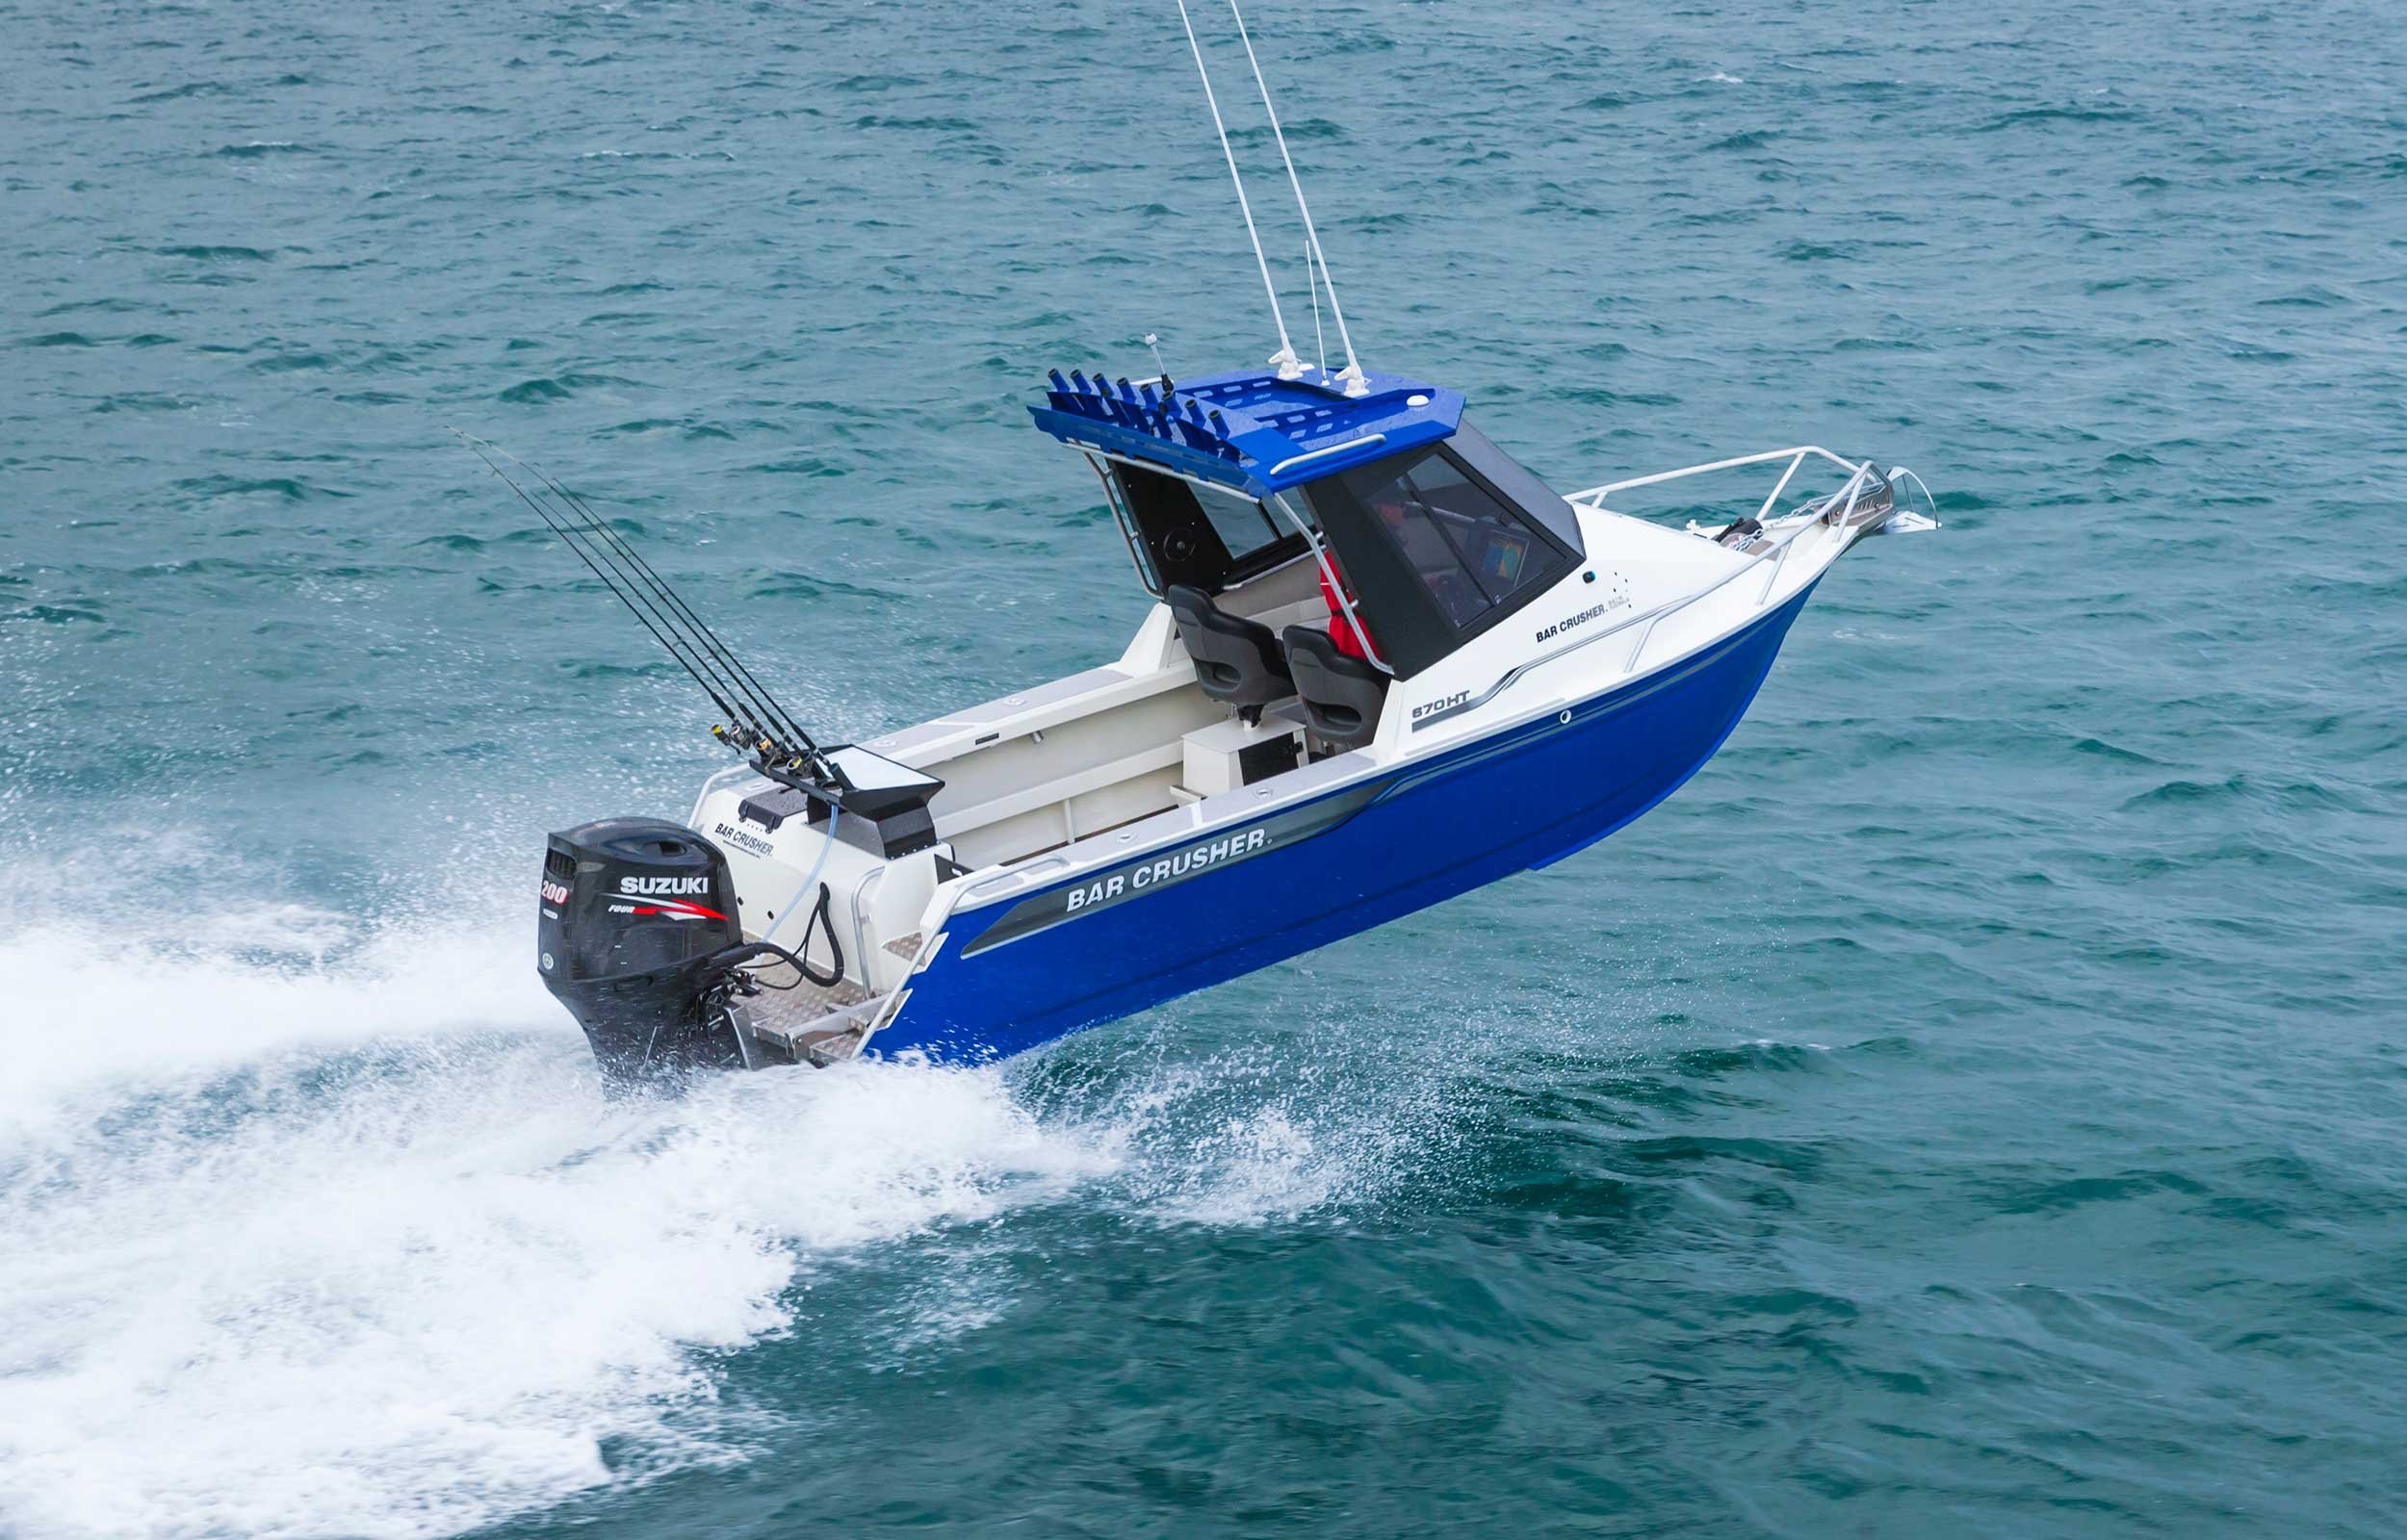 models-bar-crusher-670ht-plate-aluminium-fishing-boat-web-1